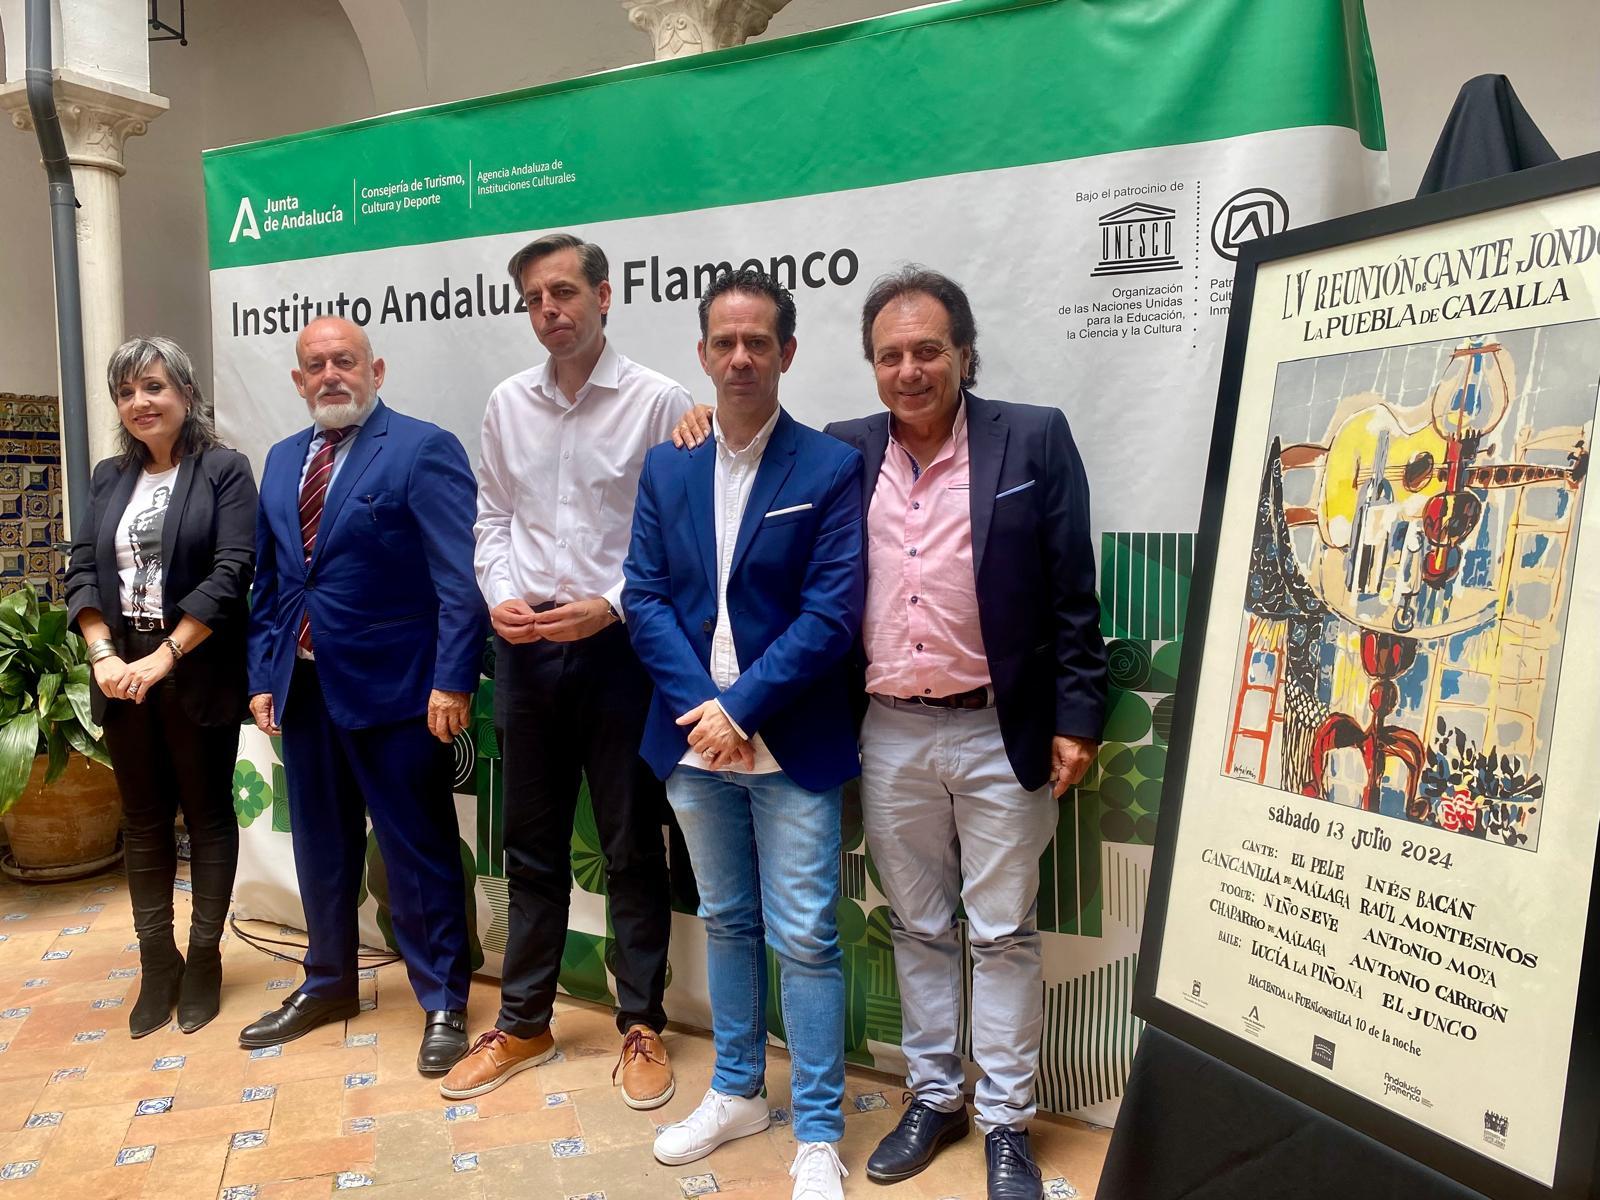 El Instituto Andaluz del Flamenco colabora con la LV Reunión de Cante Jondo de La Puebla de Cazalla